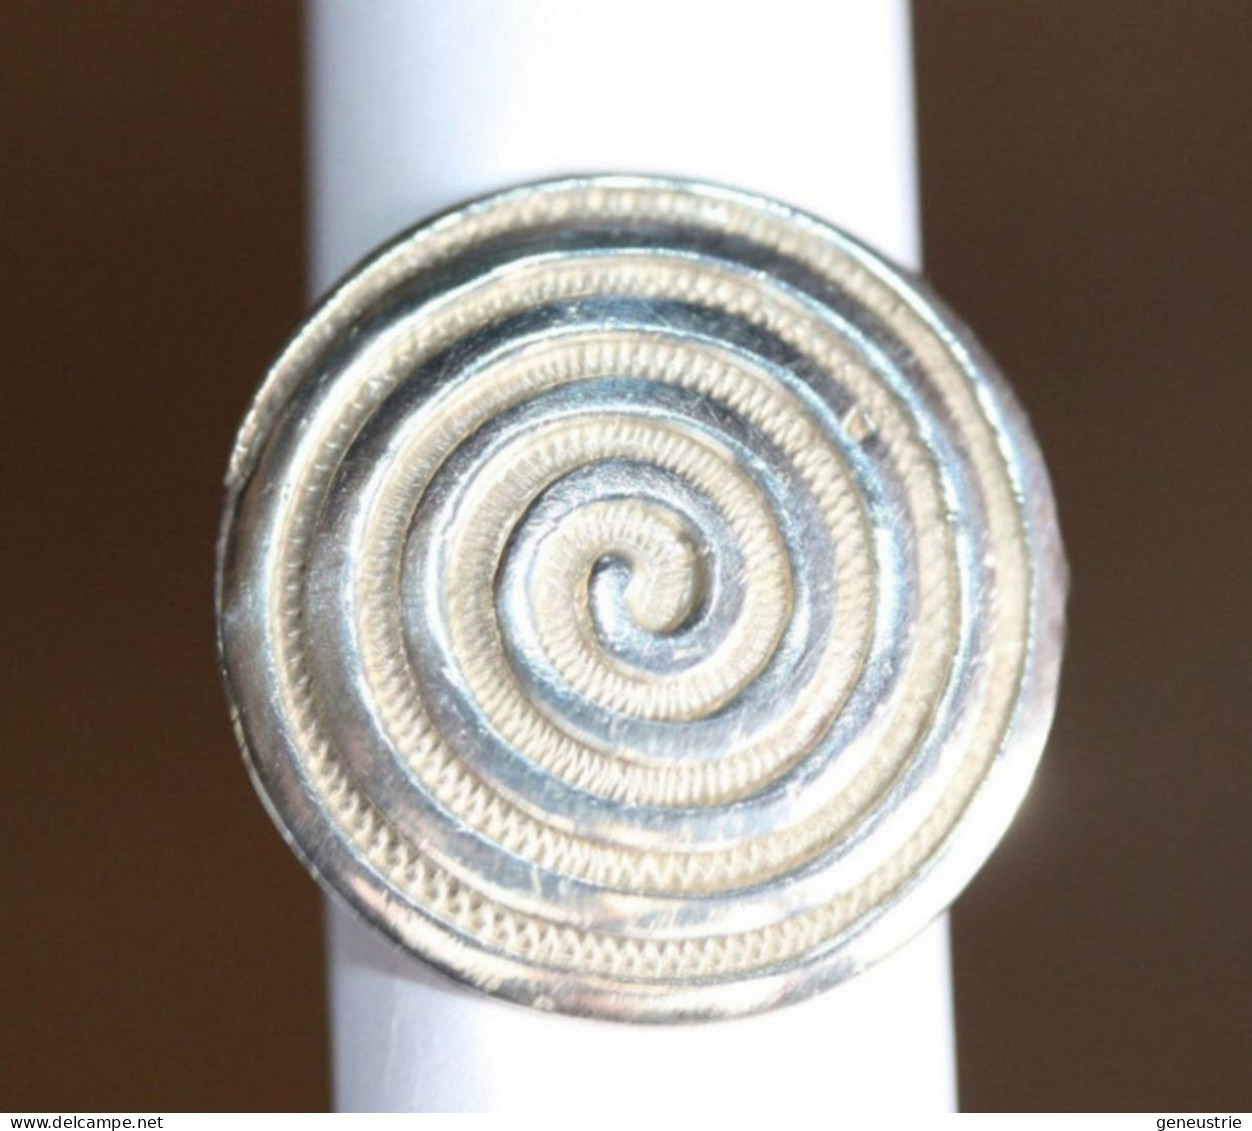 Belle Bague Argent 925 Contemporaine - Silver Ring - Rings